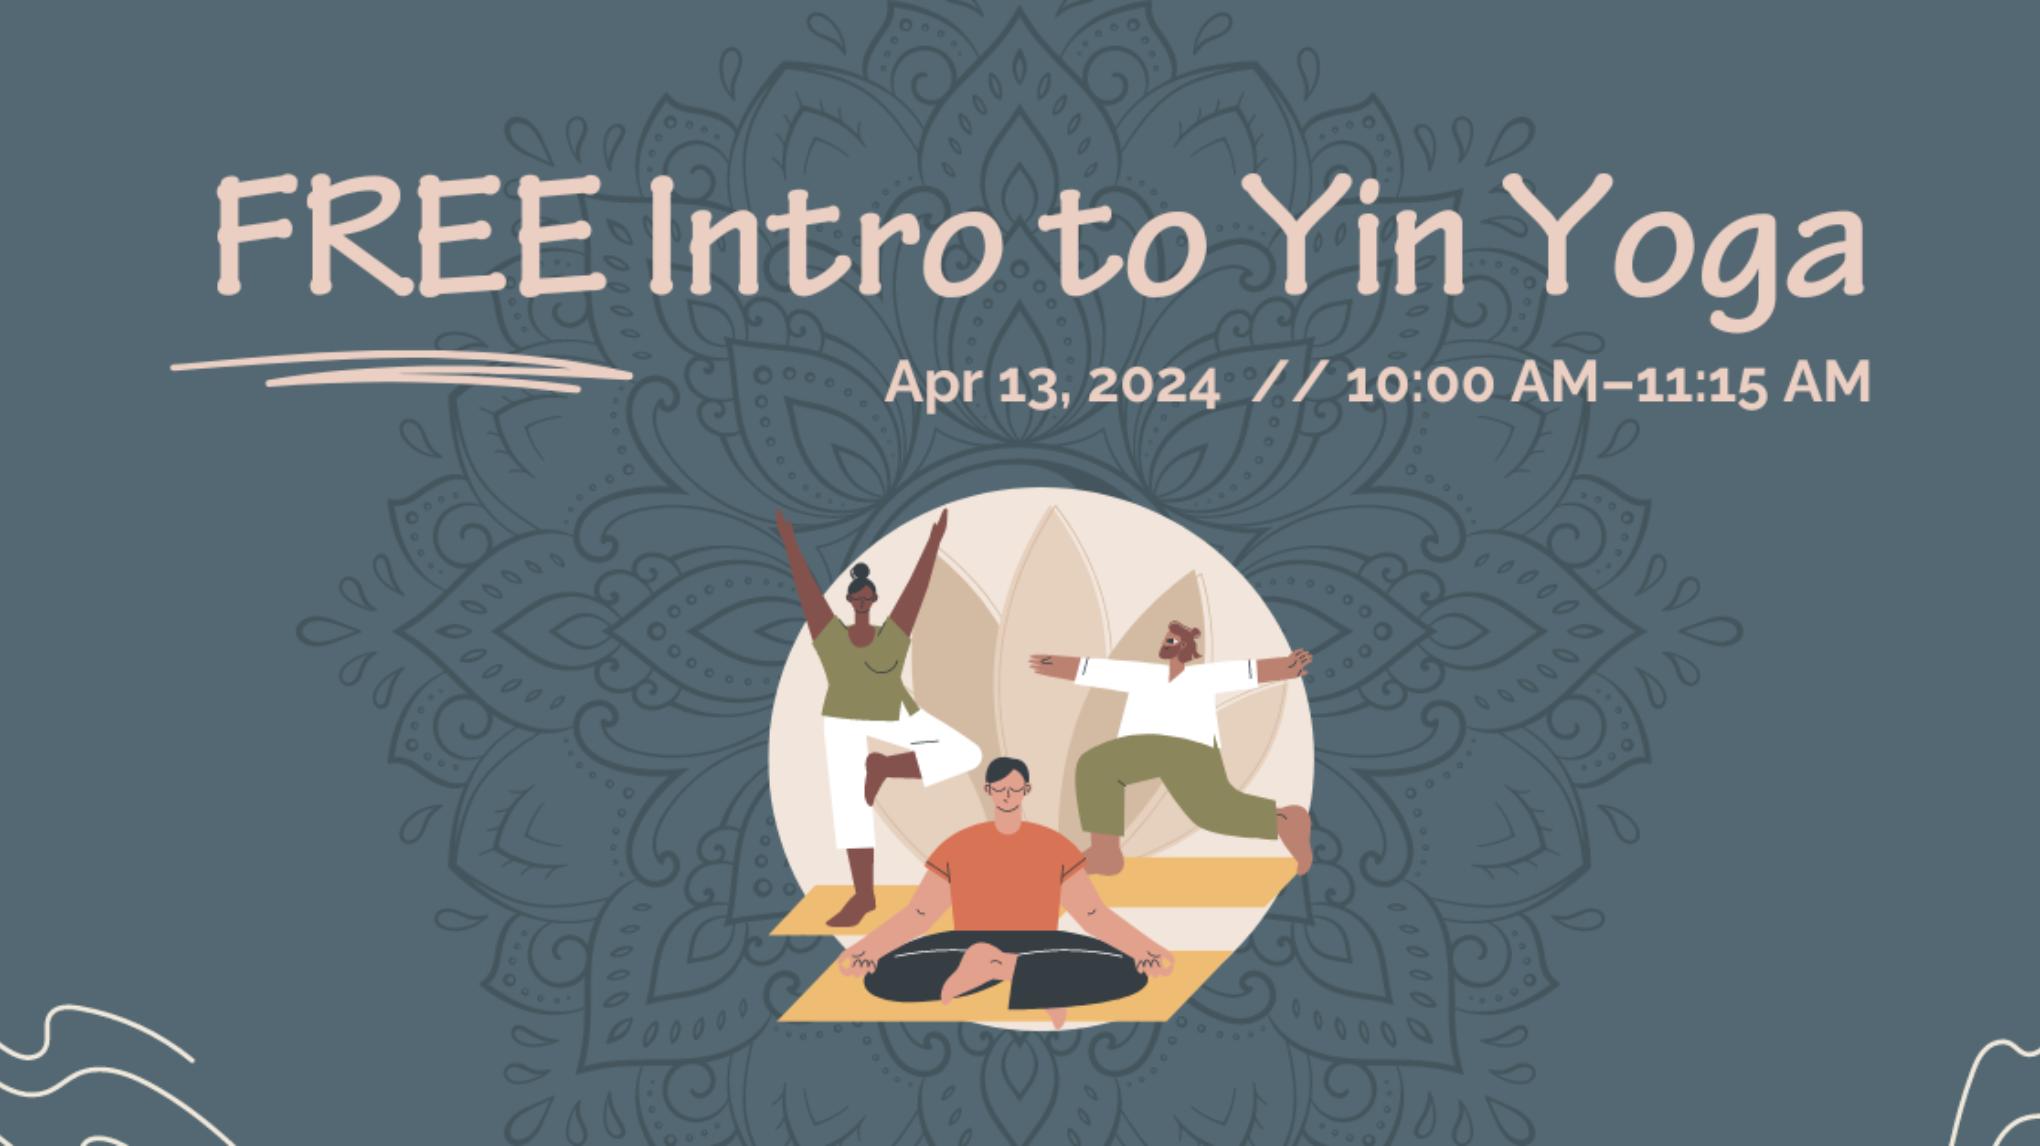 FREE Intro to Yin Yoga